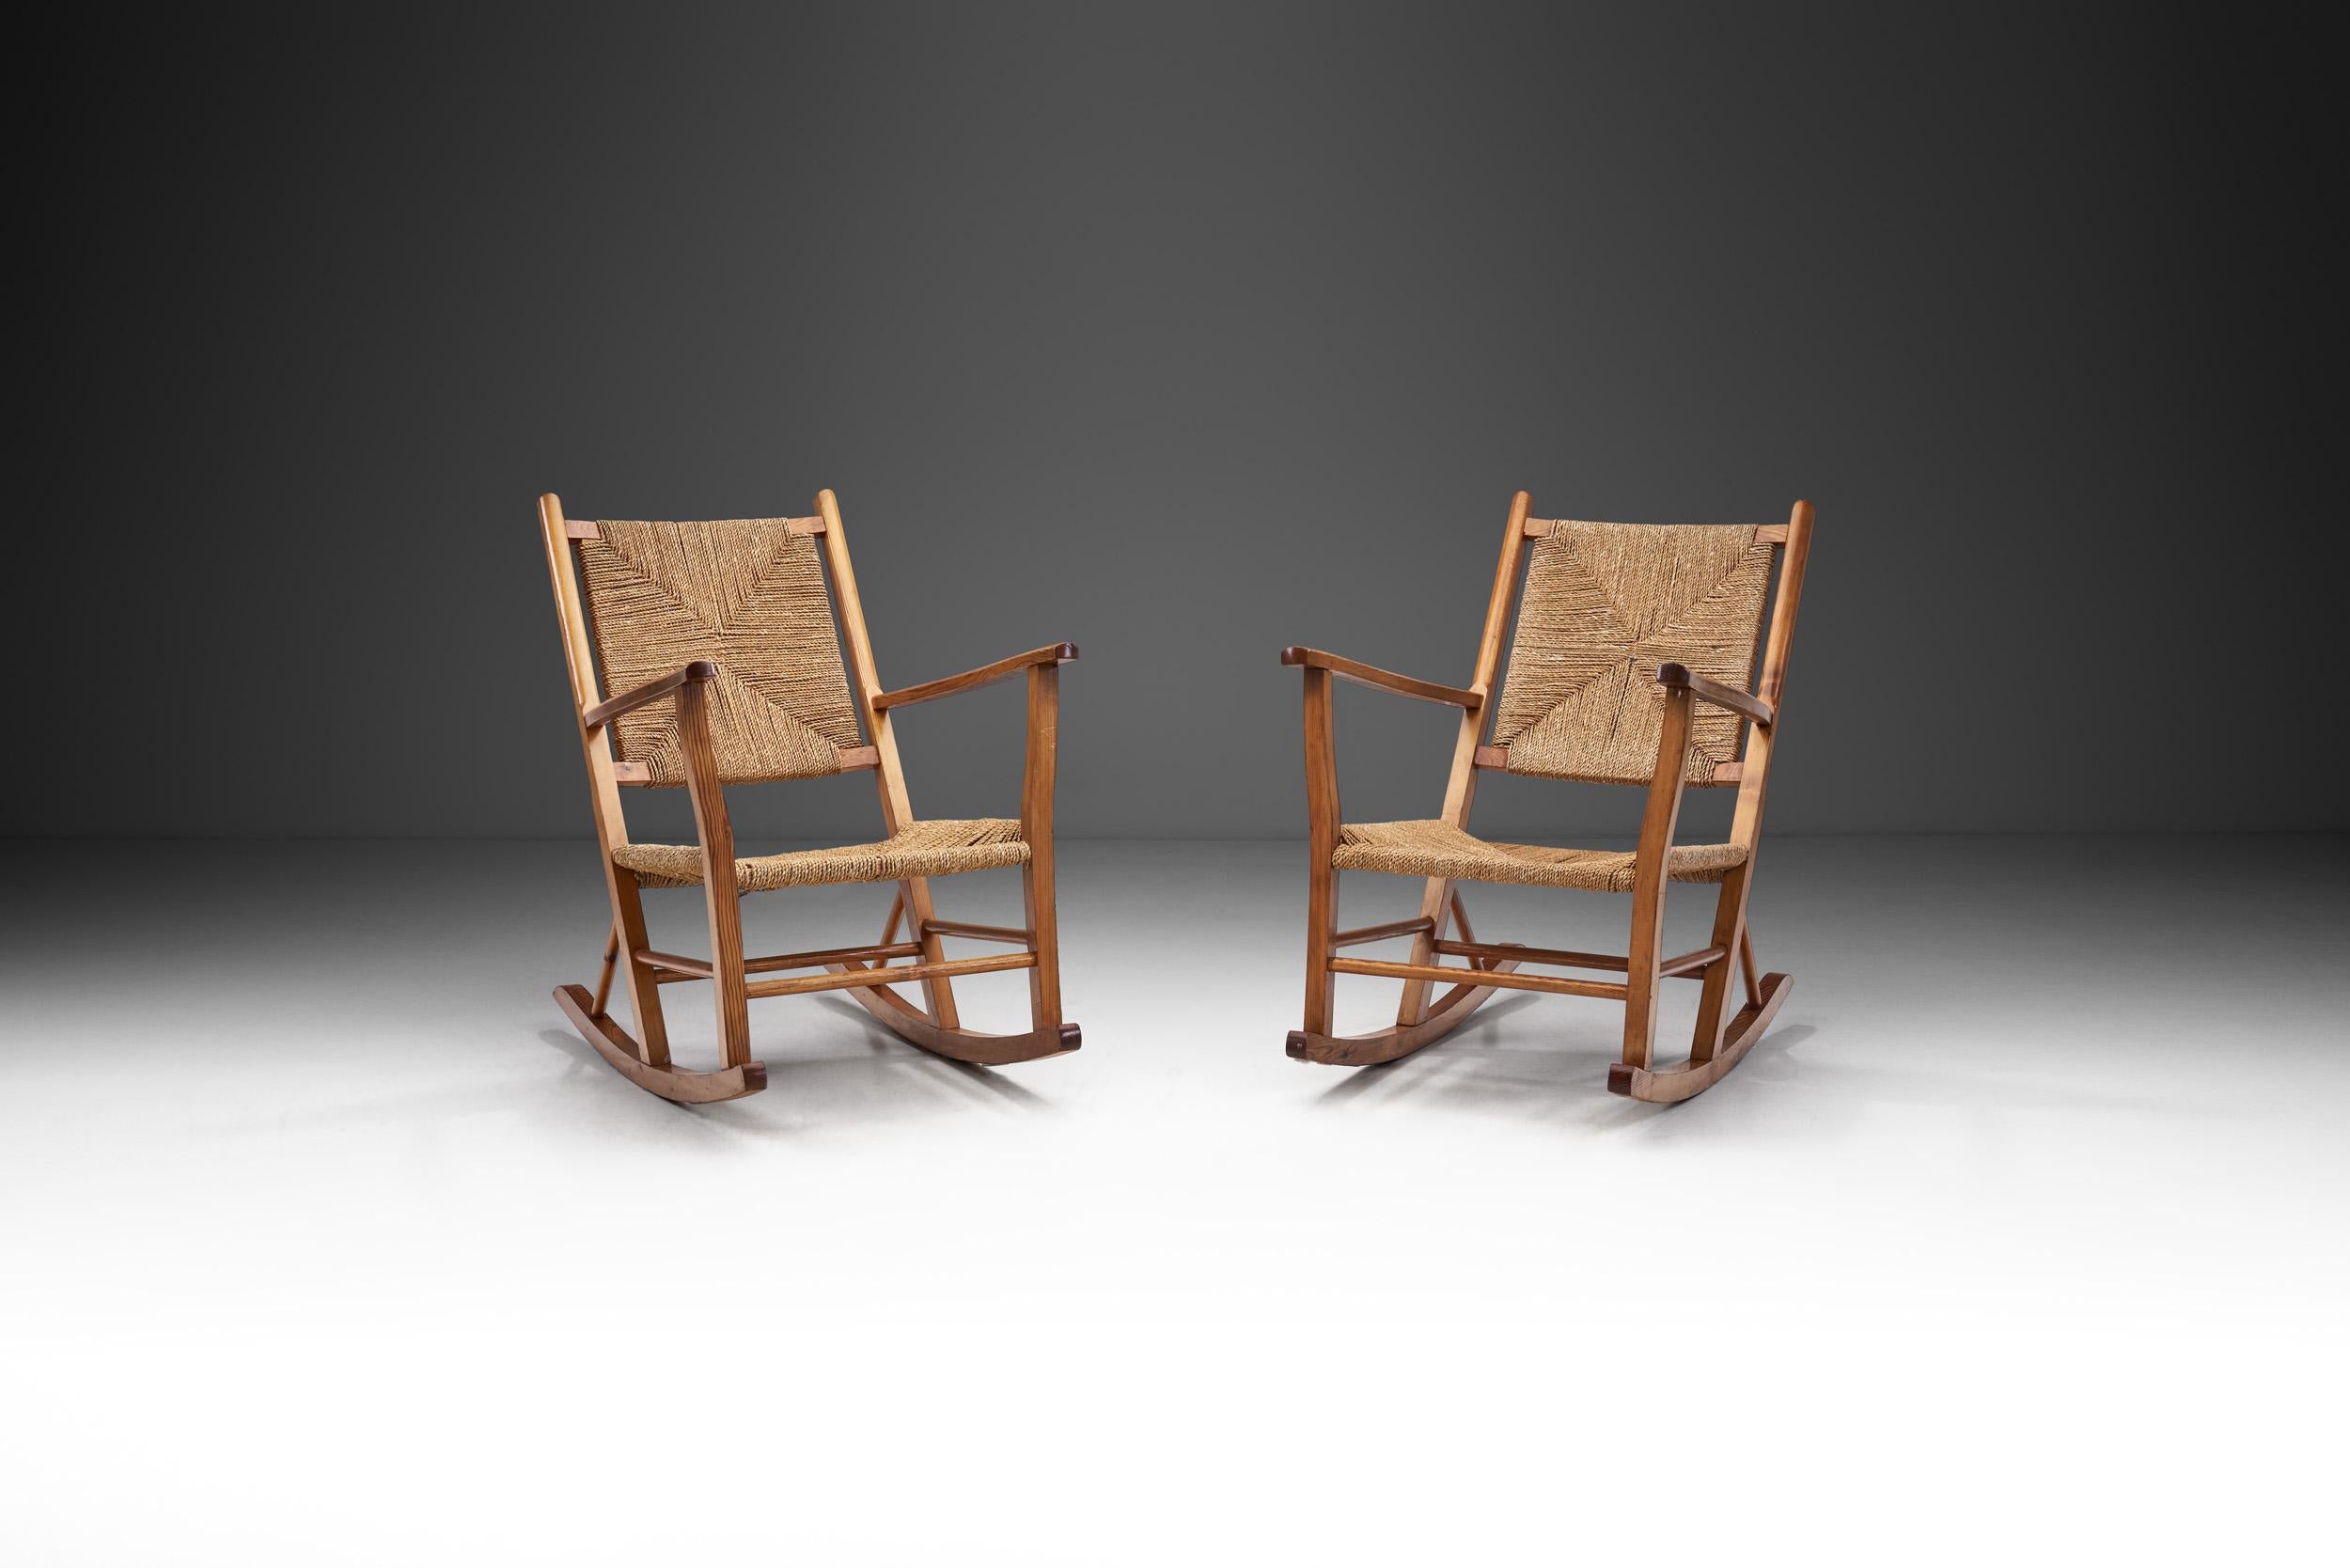 Slåke produziert seit 1938 Möbel. Die Arbeit basiert seit jeher auf guter Handwerkskunst und soliden Möbeltraditionen. Von Anfang an hat die Manufaktur Wert darauf gelegt, dass sowohl Funktion als auch Form A beachtet werden. Was sie herstellen,